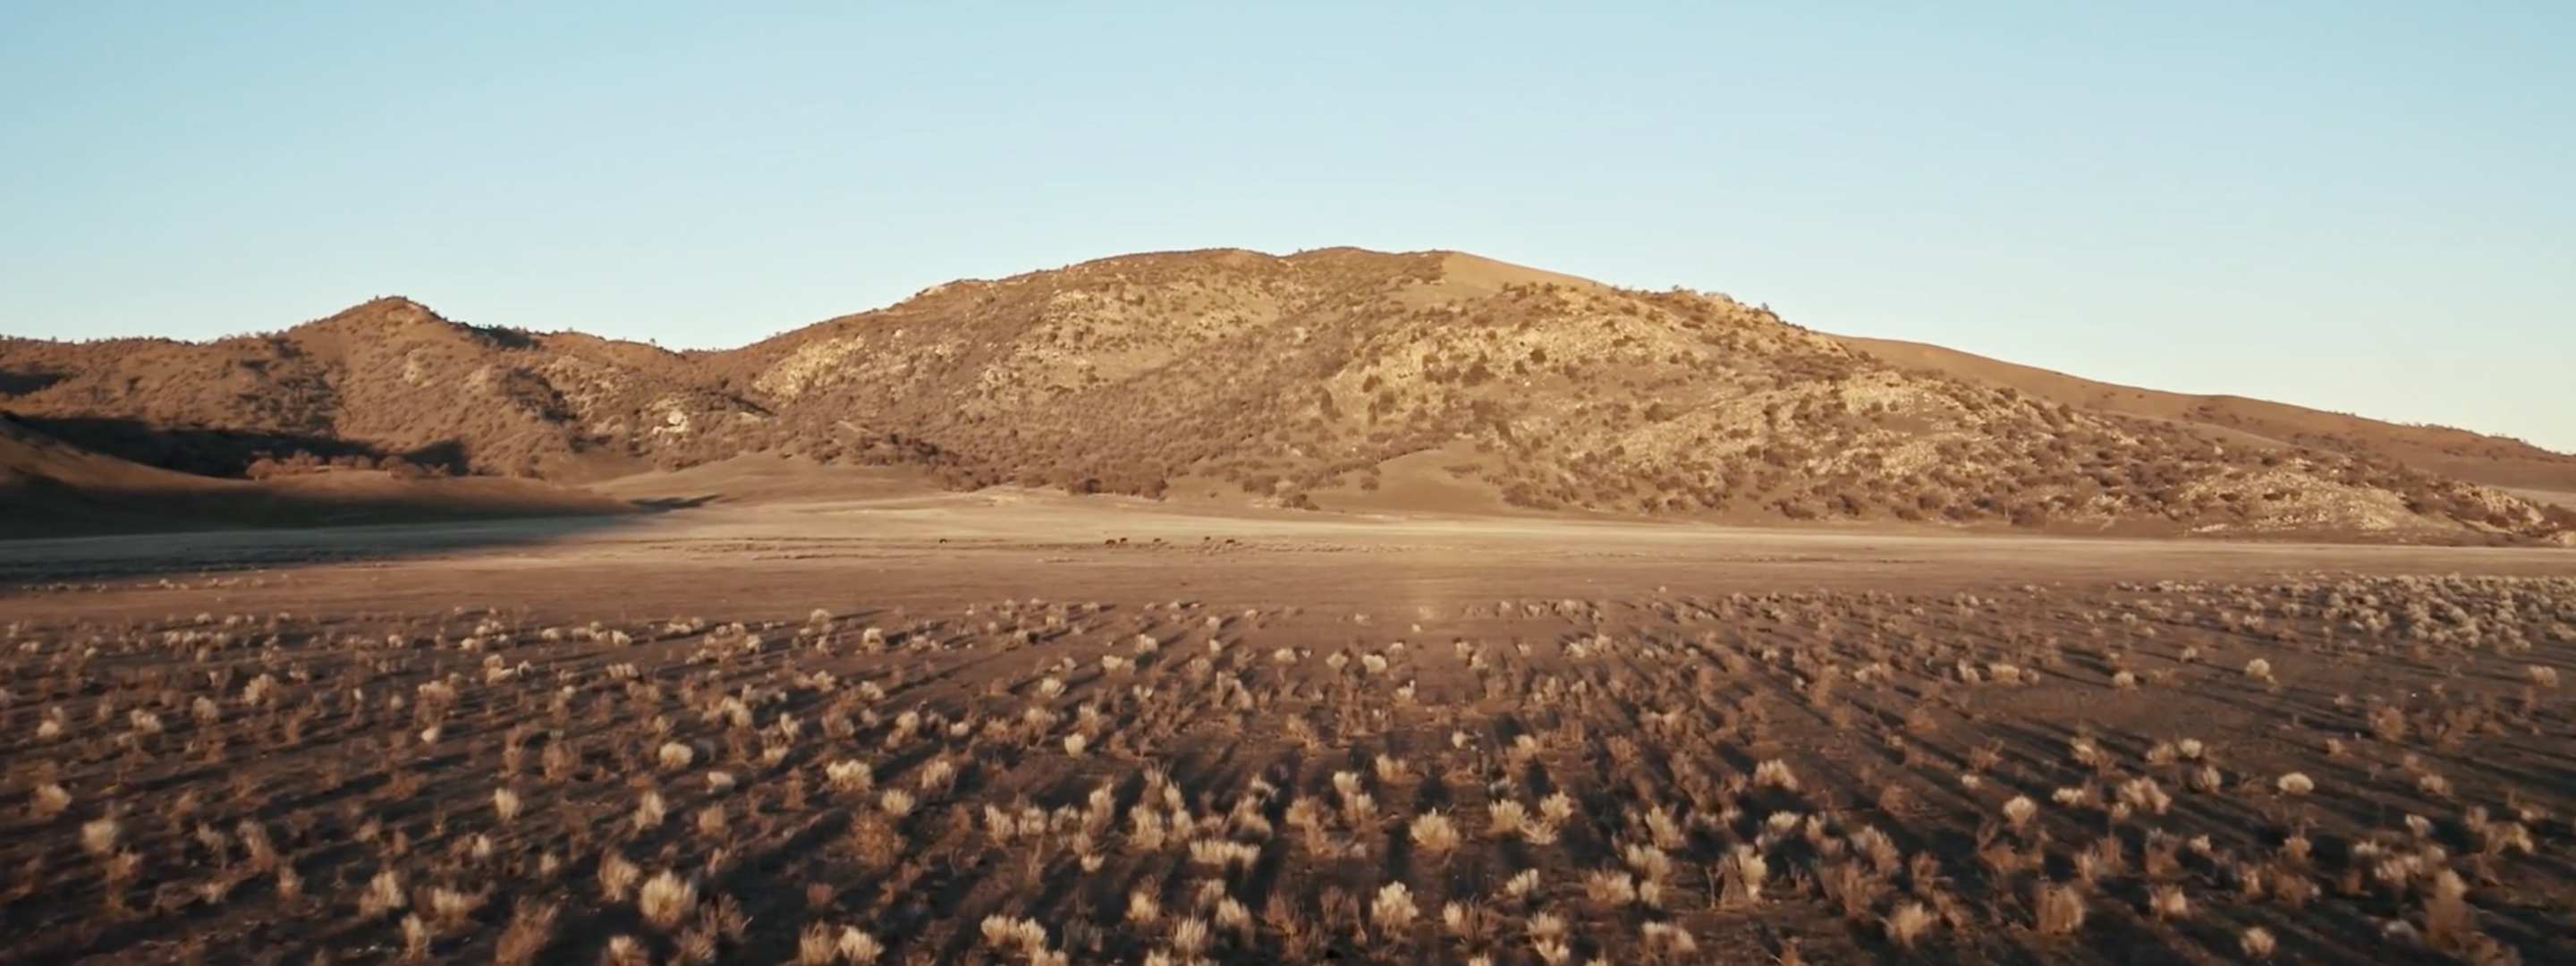 <a href="https://www.capgemini.com/news/inside-stories/mojave-desert/"></a><a href="https://www.capgemini.com/se-en/news/inside-stories/mojave-desert/">The Mojave Desert: Data for tortoises and tires</a>